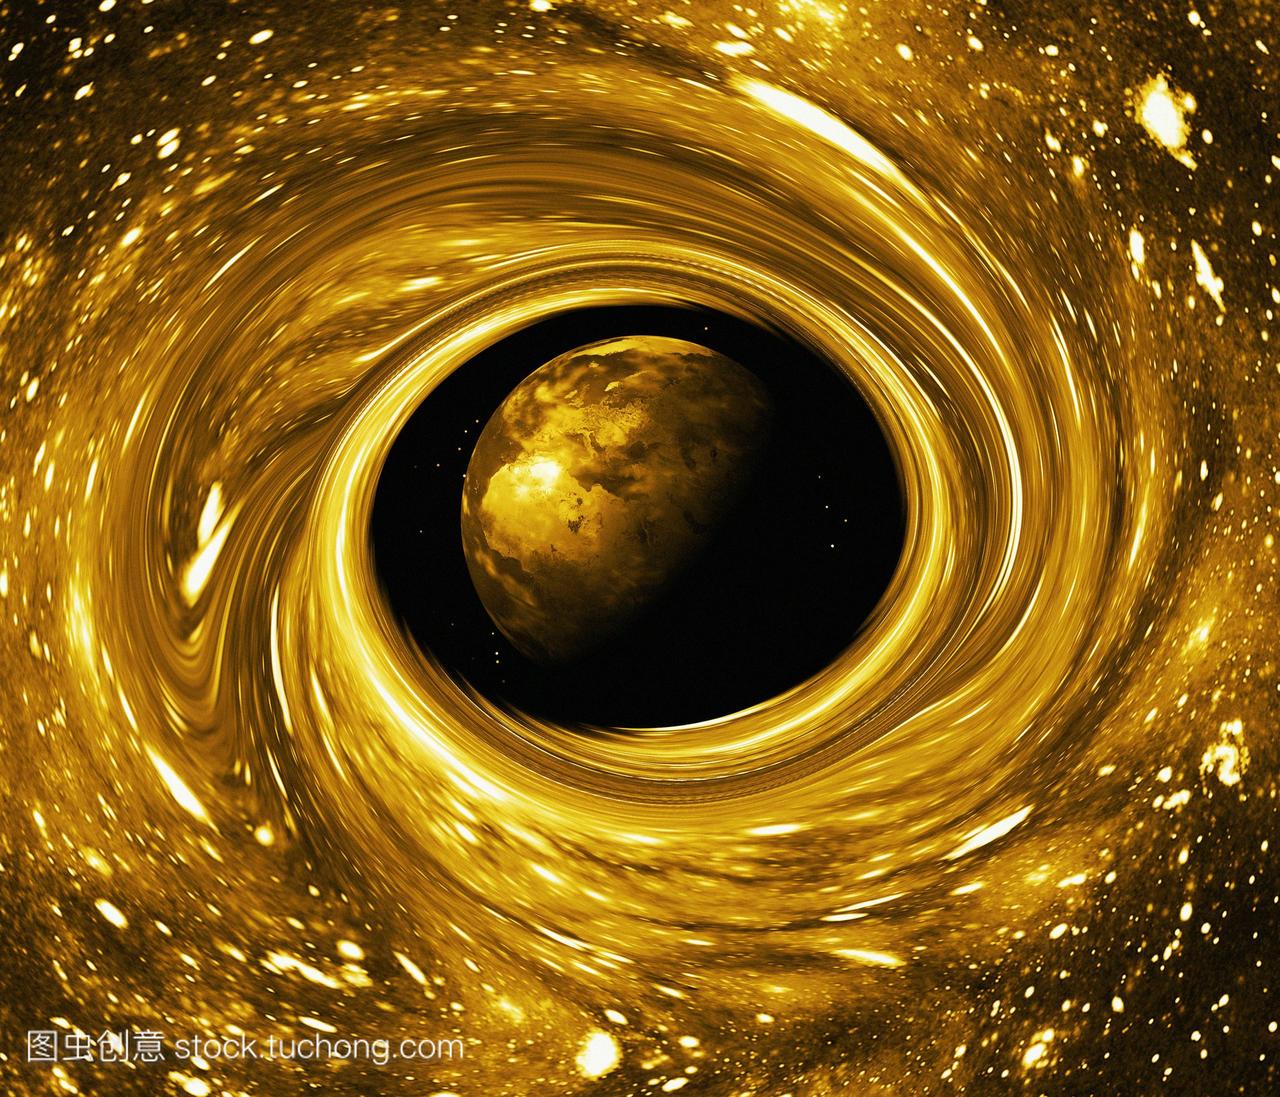 黑洞吞噬地球,电脑艺术。黑洞是一个空间的区